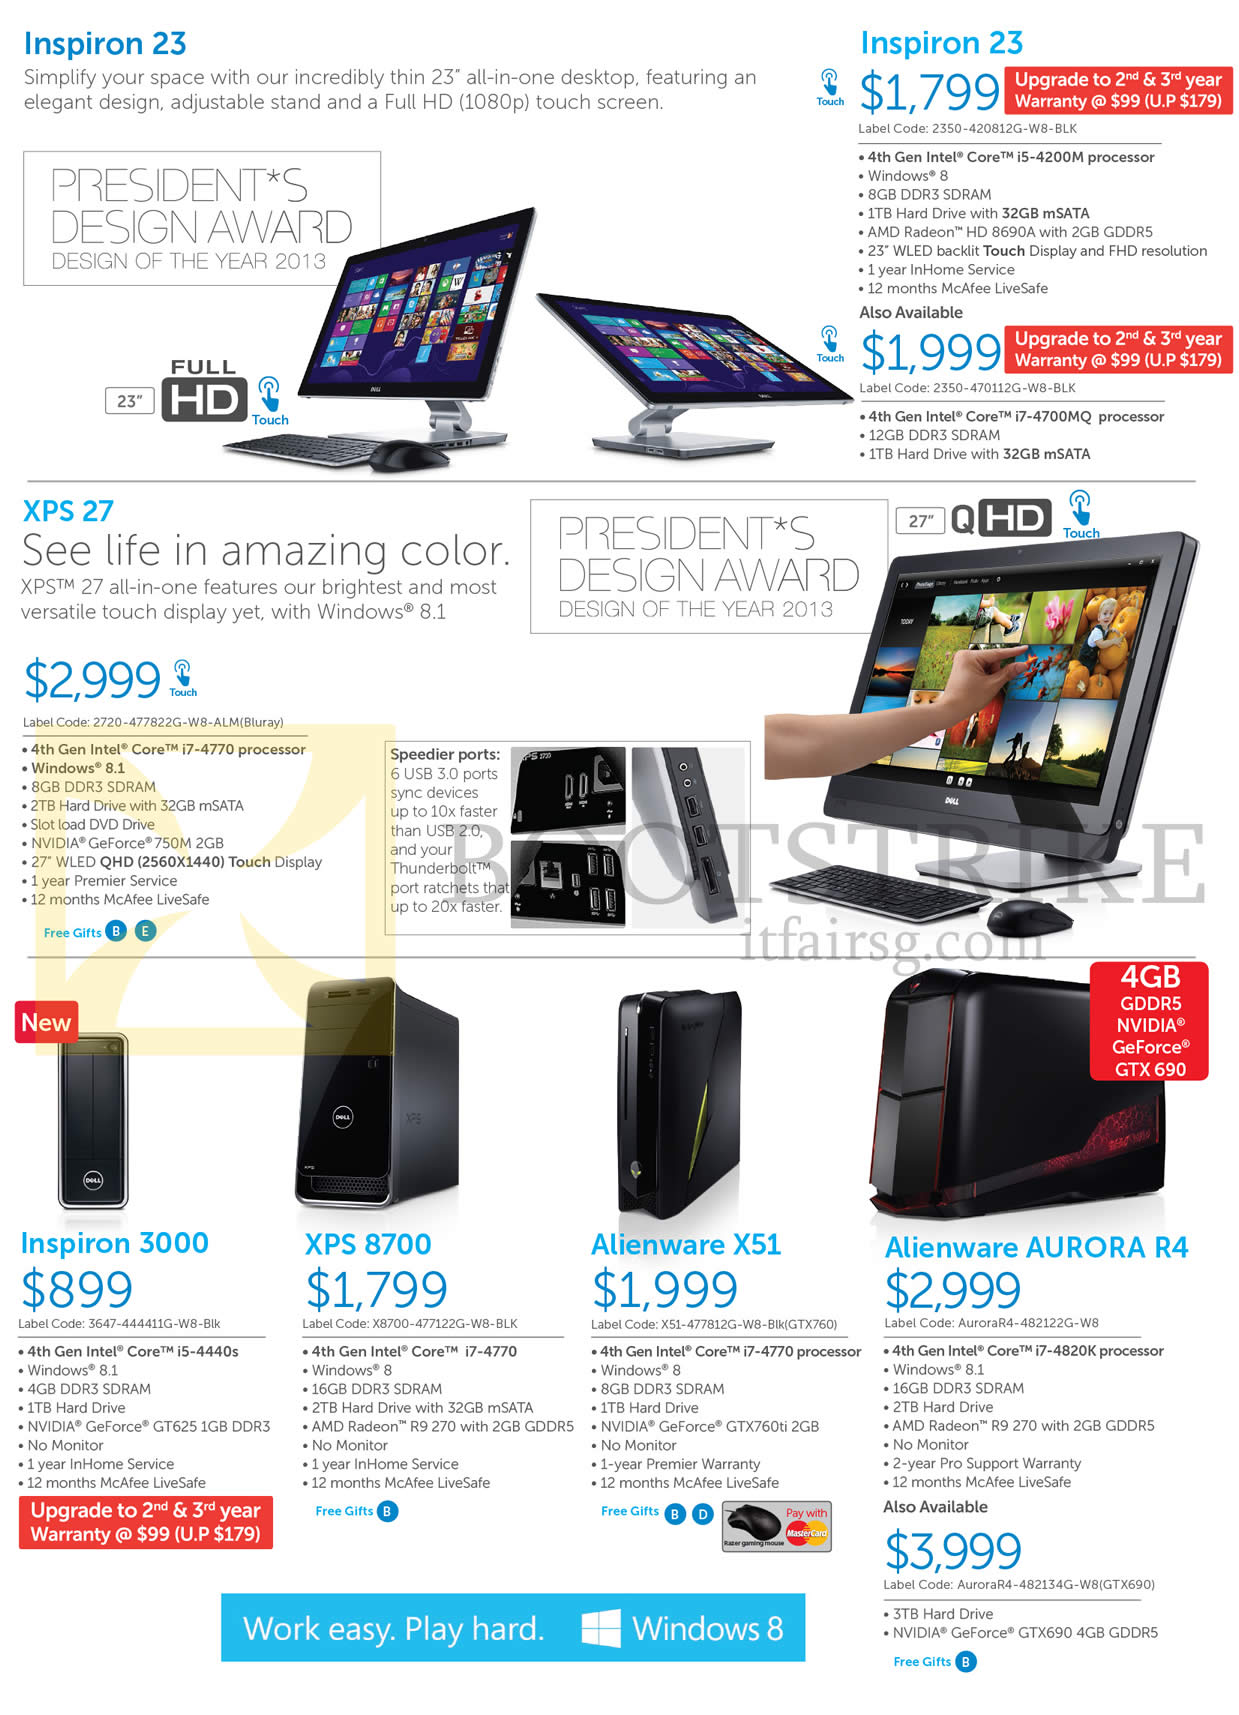 IT SHOW 2014 price list image brochure of Dell Desktop PCs, AIO Desktop PCs, Inspiron 23, Inspiron 3000, XPS 27, XPS 8700, Alienware X51, Alienware Aurora R4